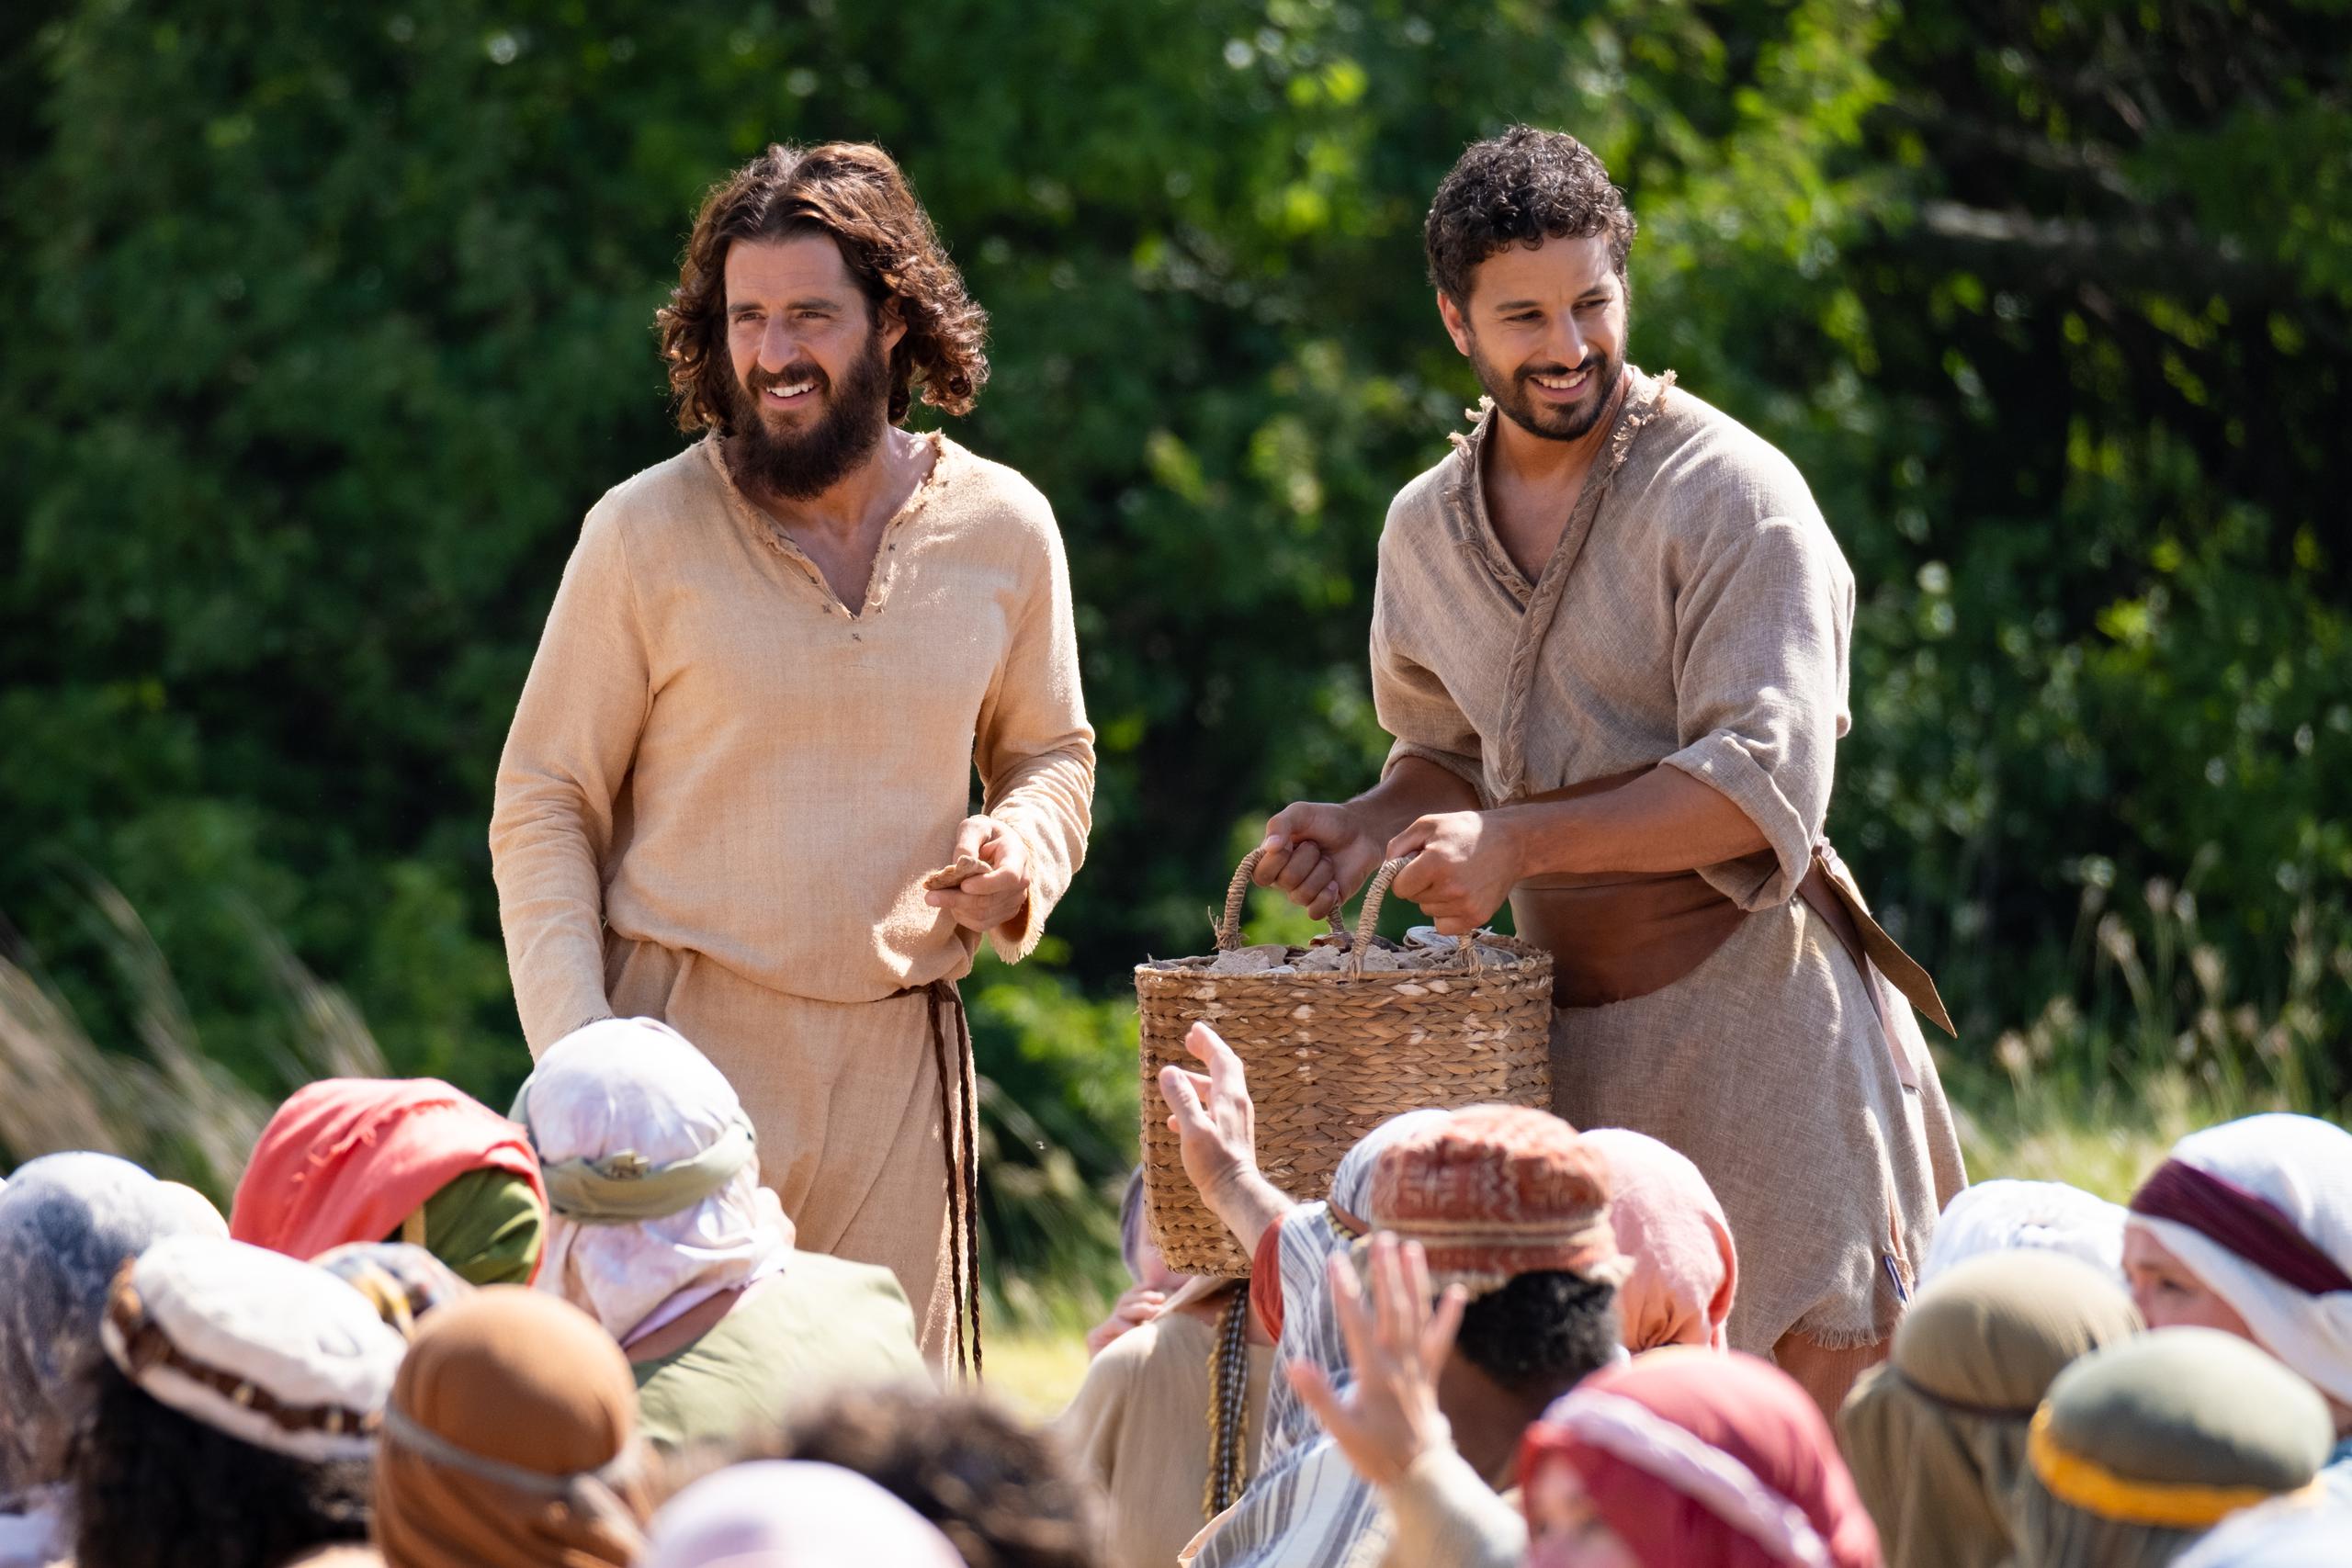 La serie está basada en la vida de Jesucristo y sus enseñanzas a la luz de quienes lo conocieron.